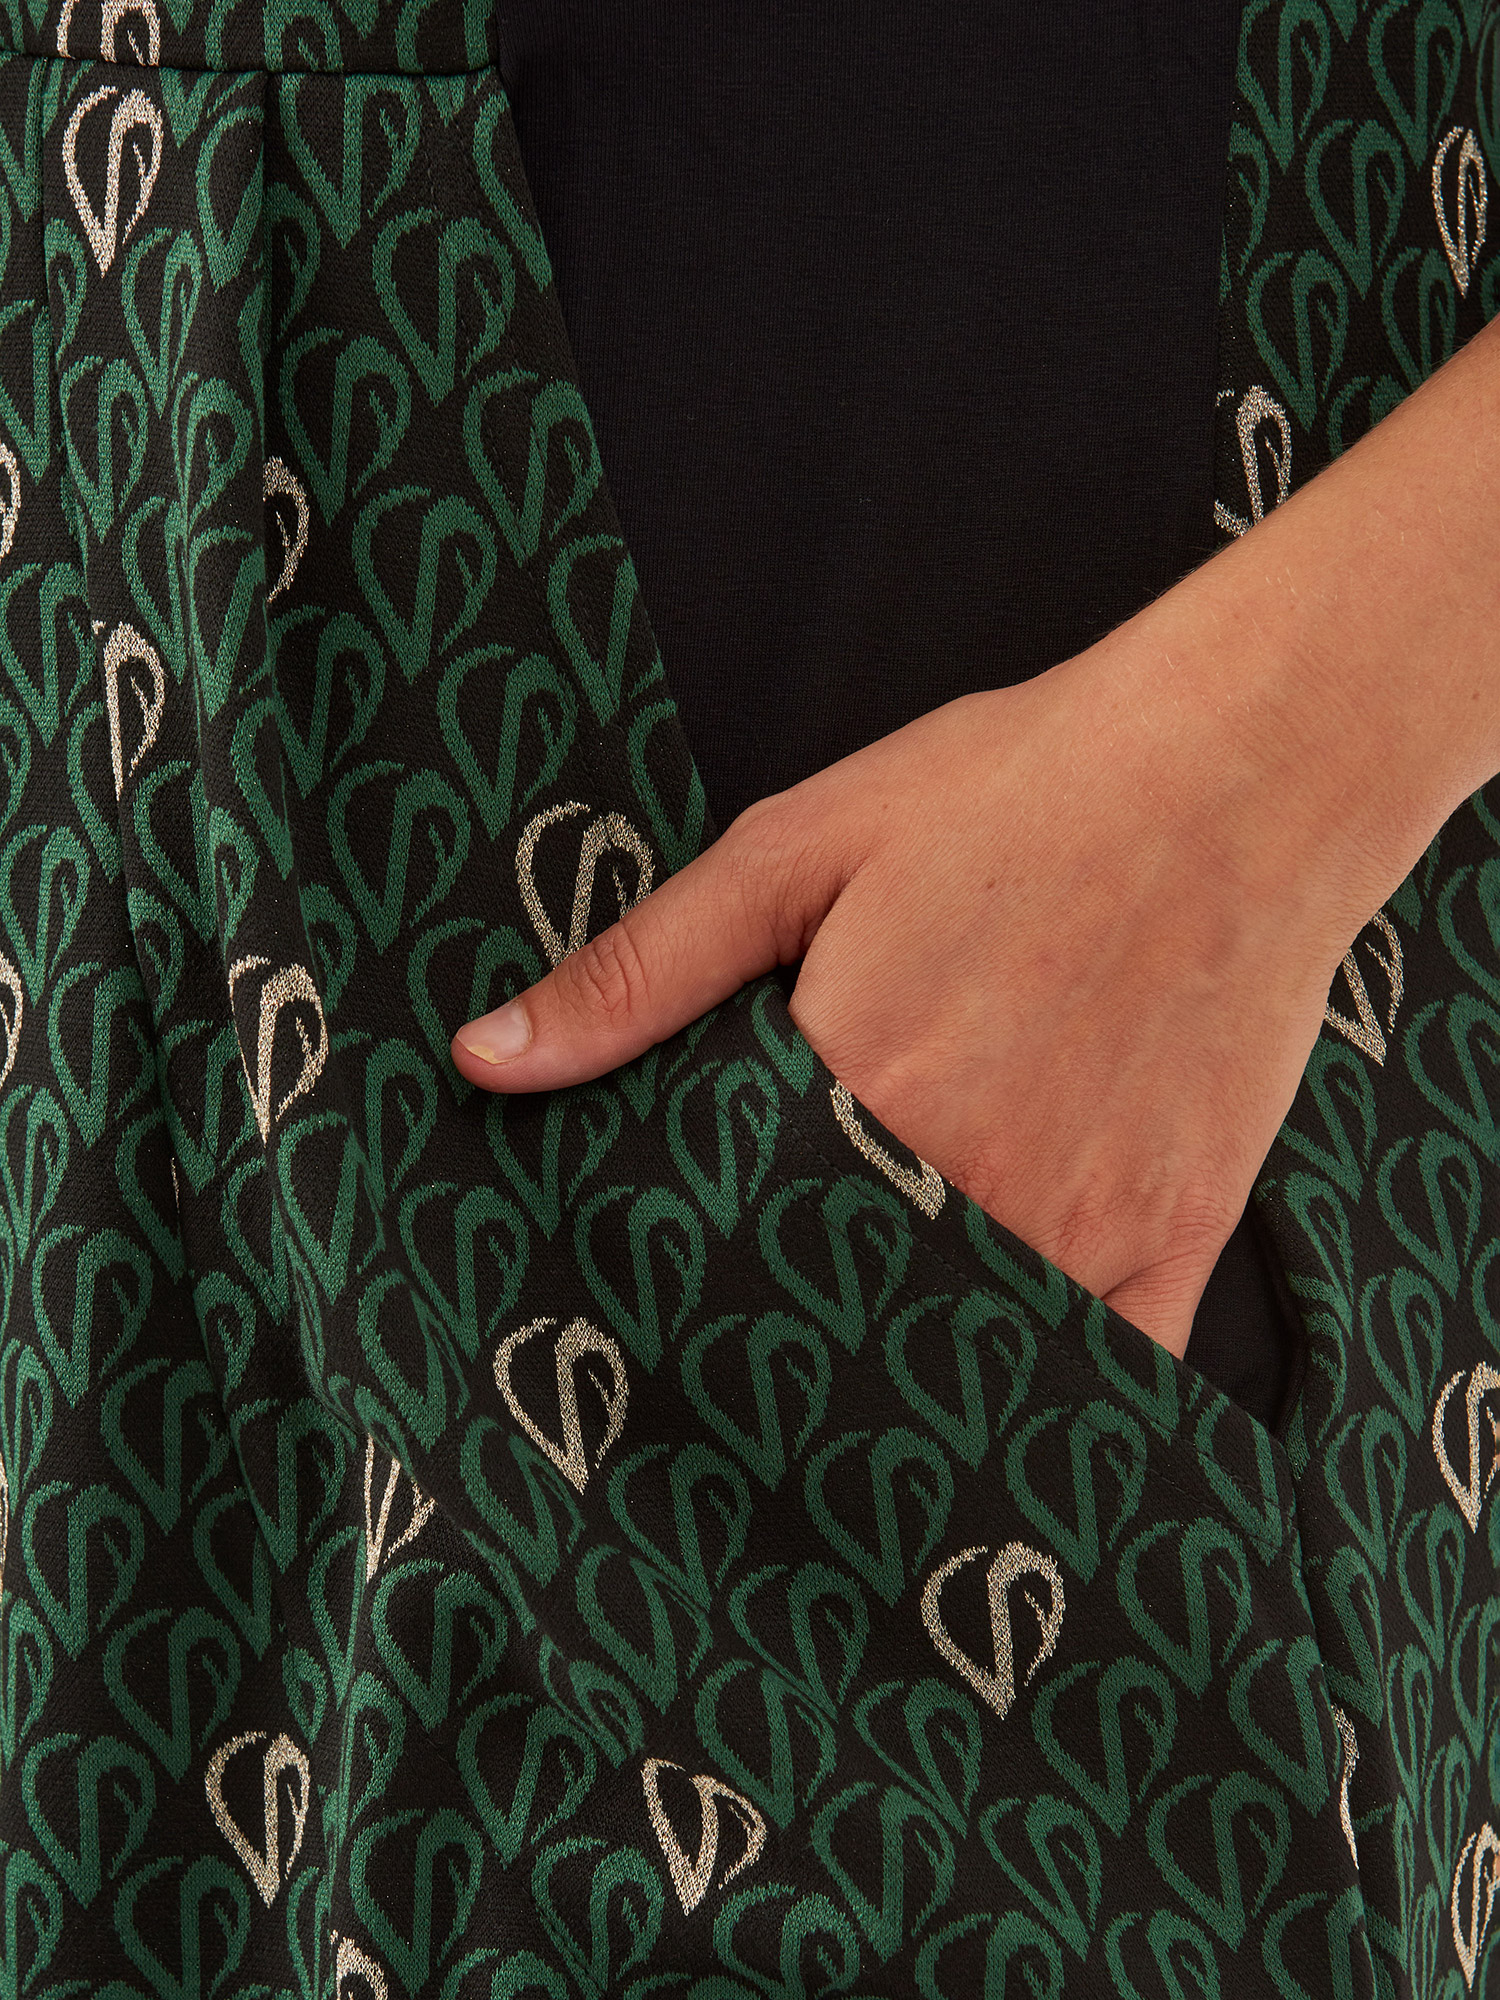 BIANCO - Sort og grøn mønstret viskose kjole med guld detaljer fra Pont Neuf